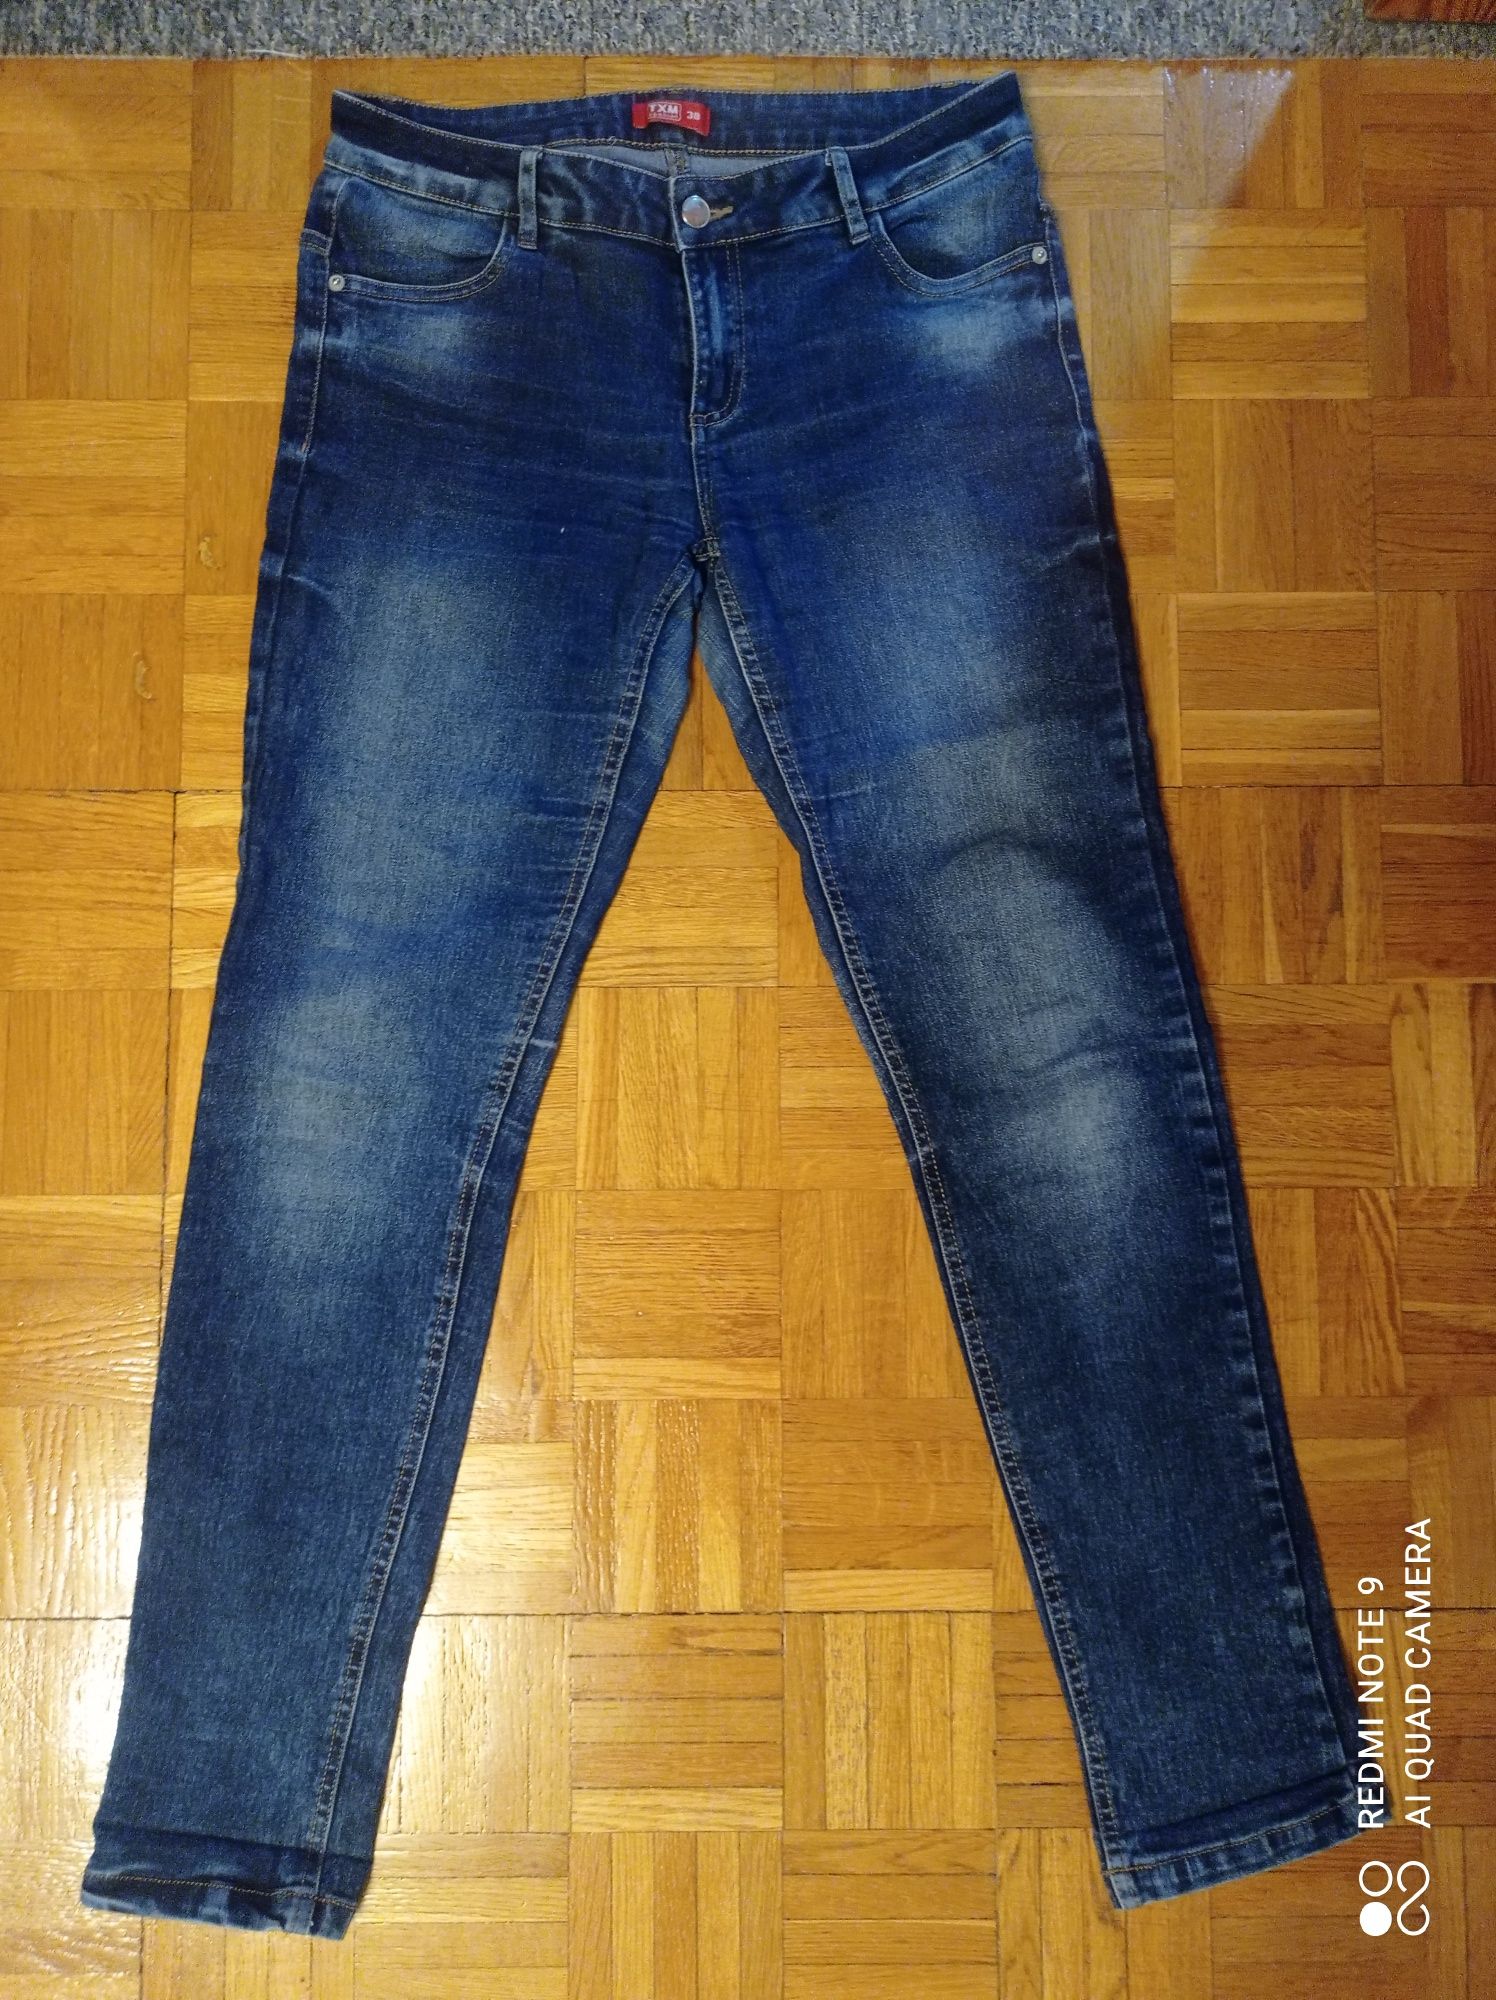 Spodnie damskie jeansowe , TXM, rozm- 38 (28x32)